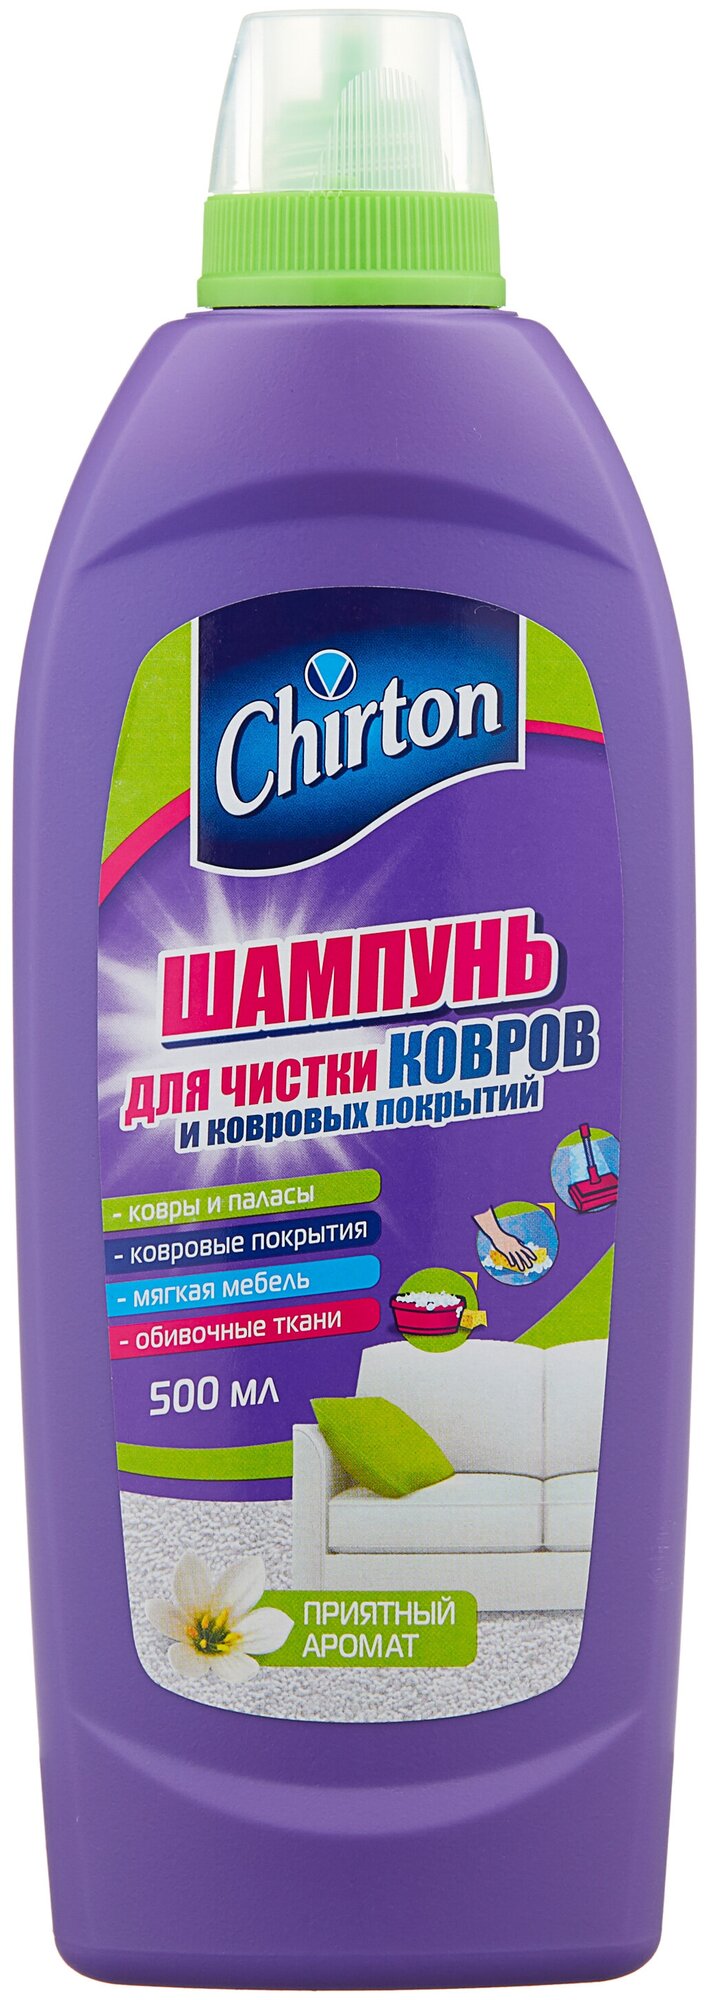 Chirton Шампунь для чистки ковров и ковровых покрытий